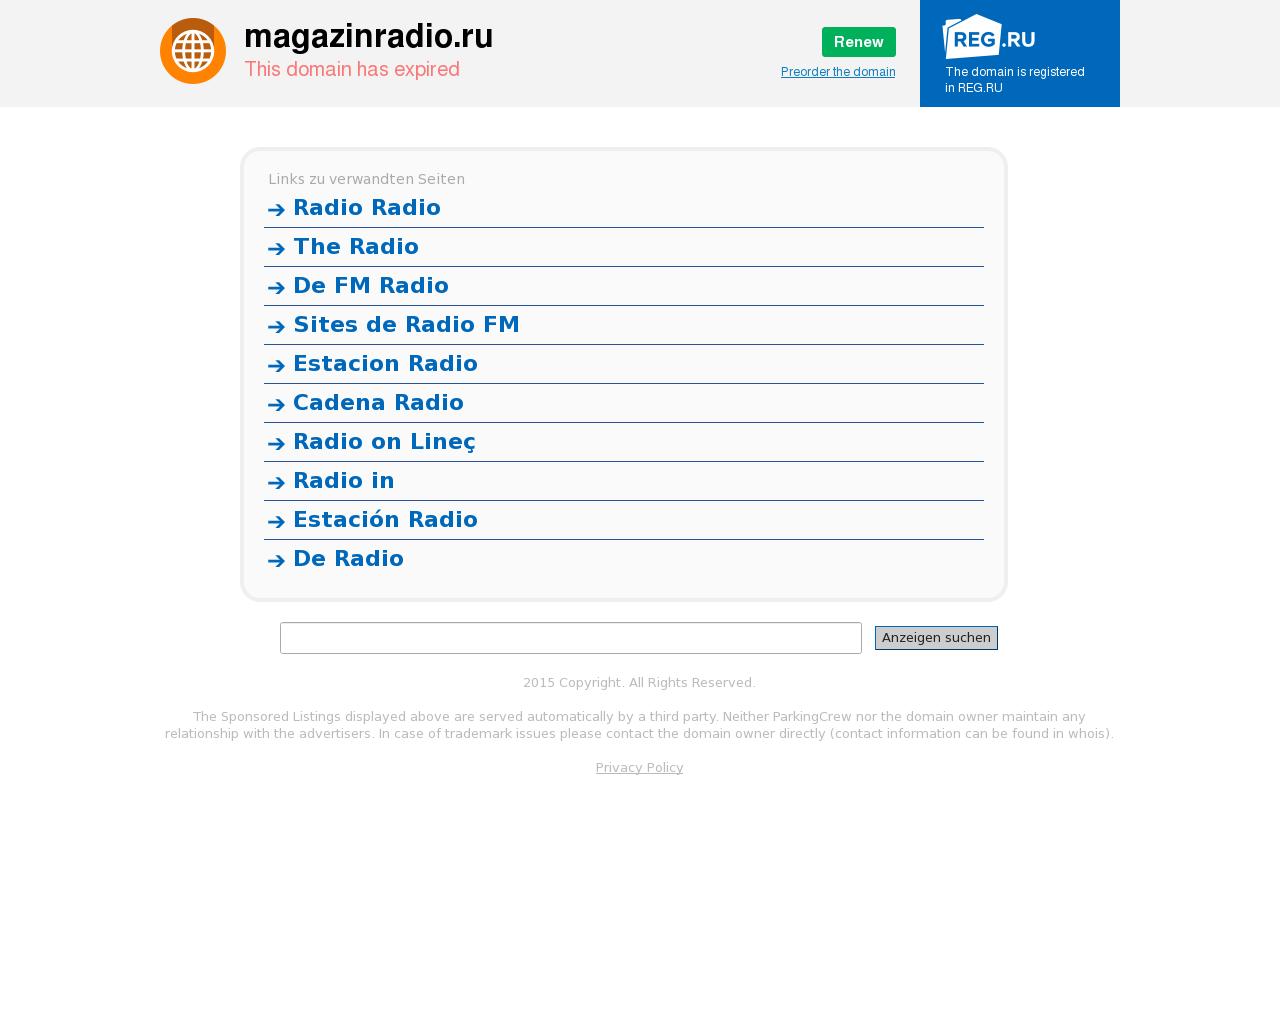 Изображение сайта magazinradio.ru в разрешении 1280x1024